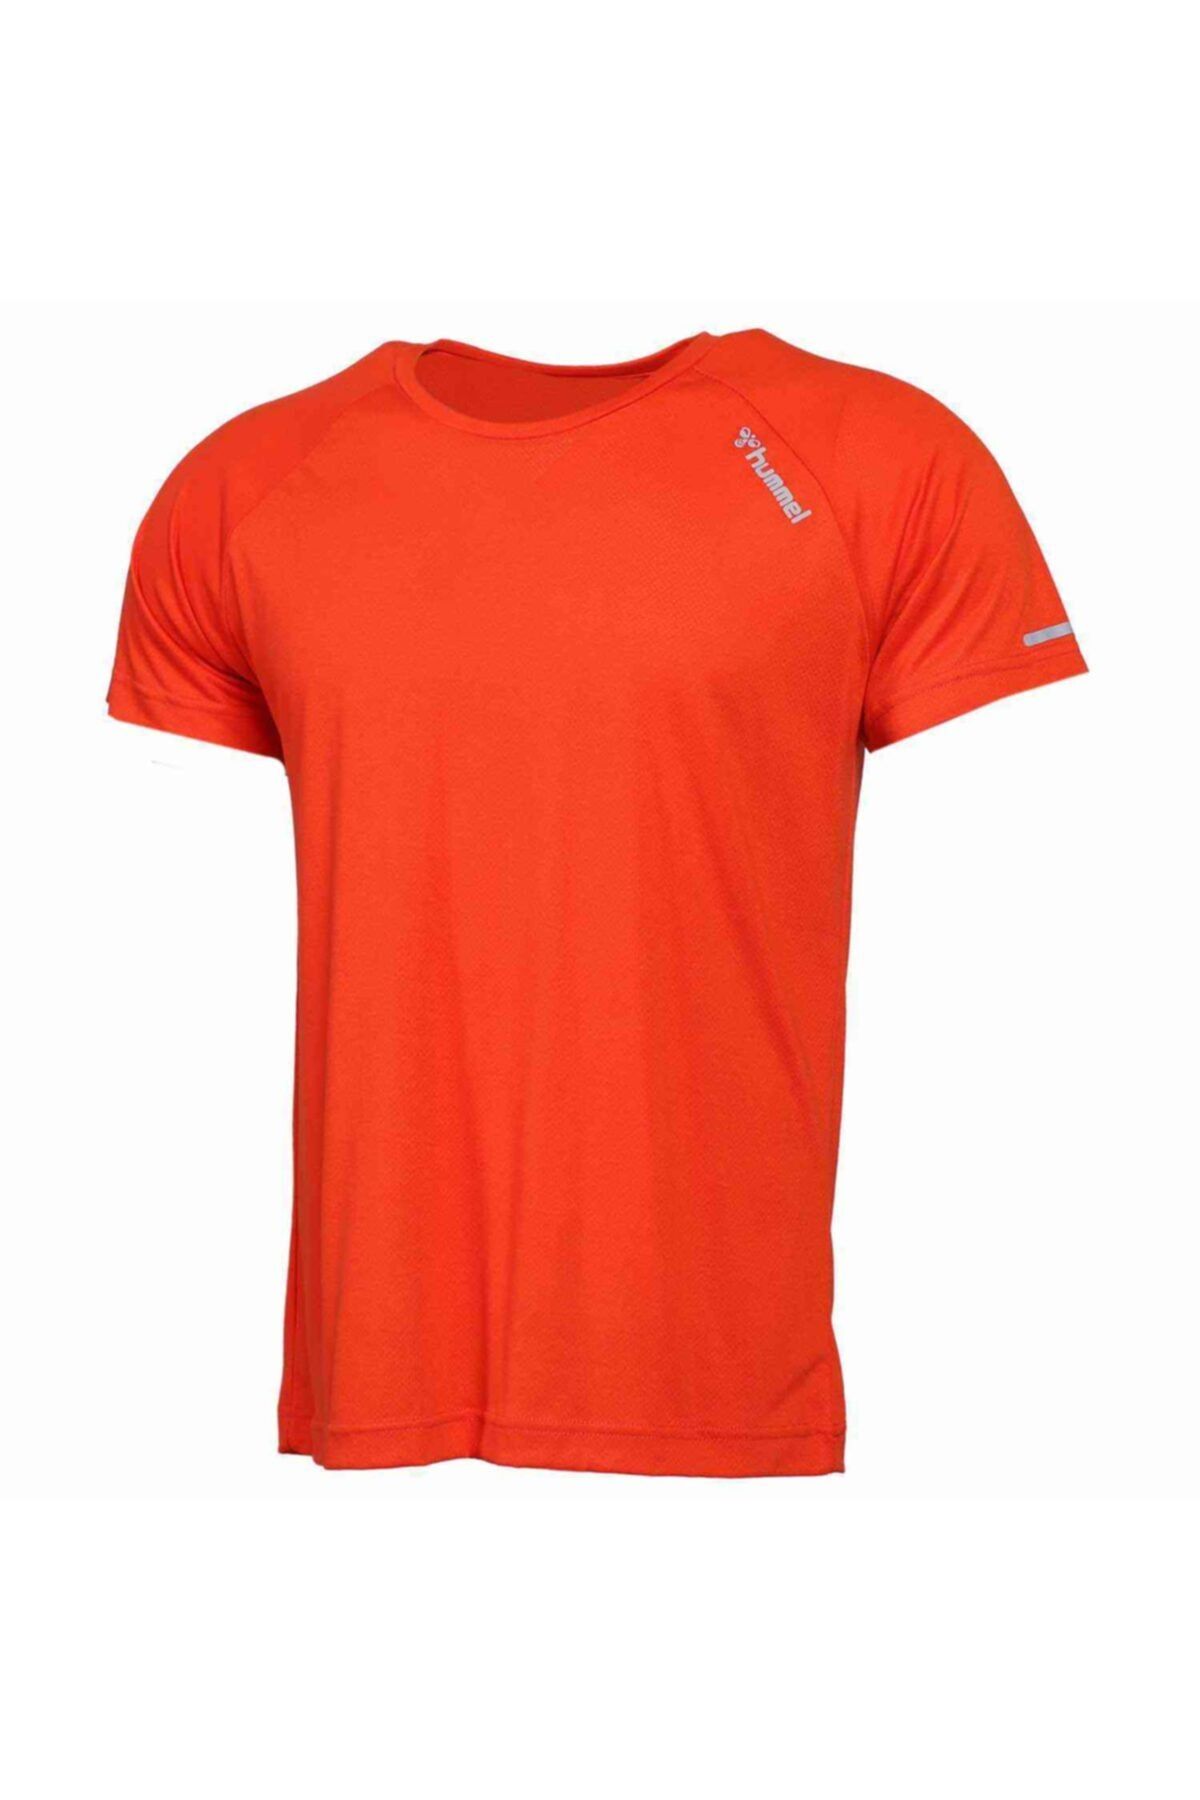 تی شرت آستین کوتاه مردانه ونج نارنجی هومل Hummel (برند دانمارک)